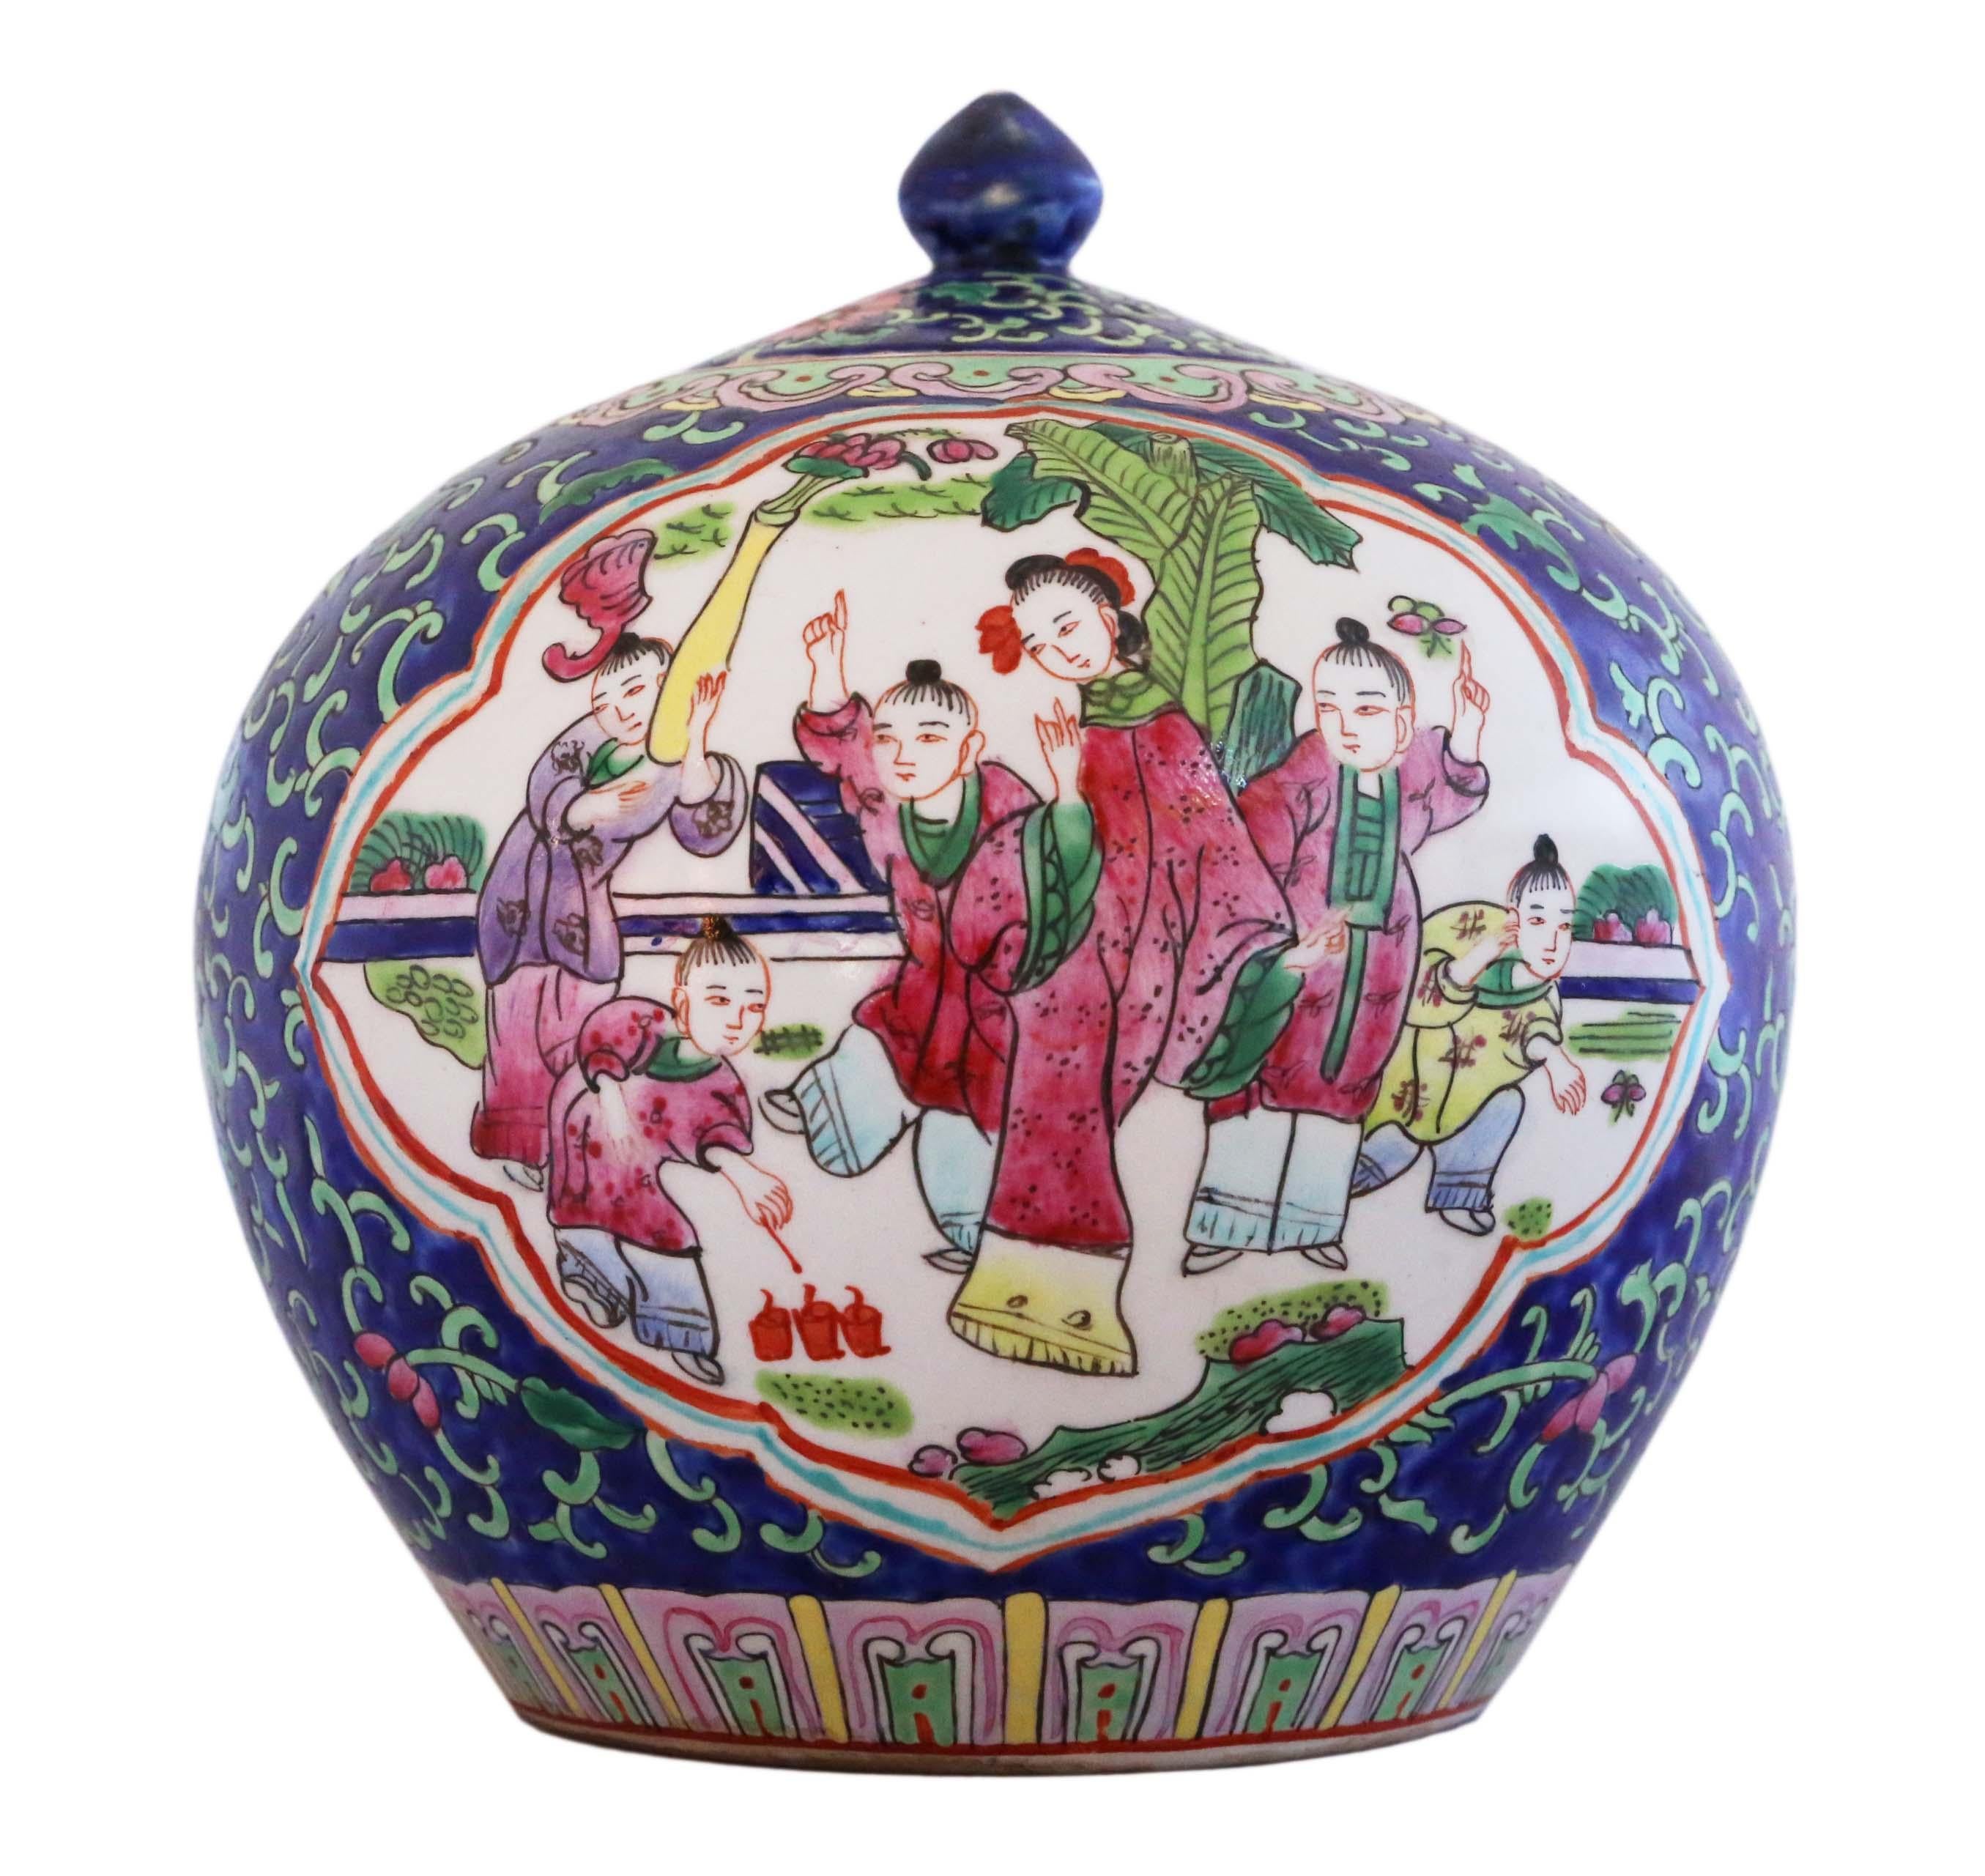 tongzhi porcelain